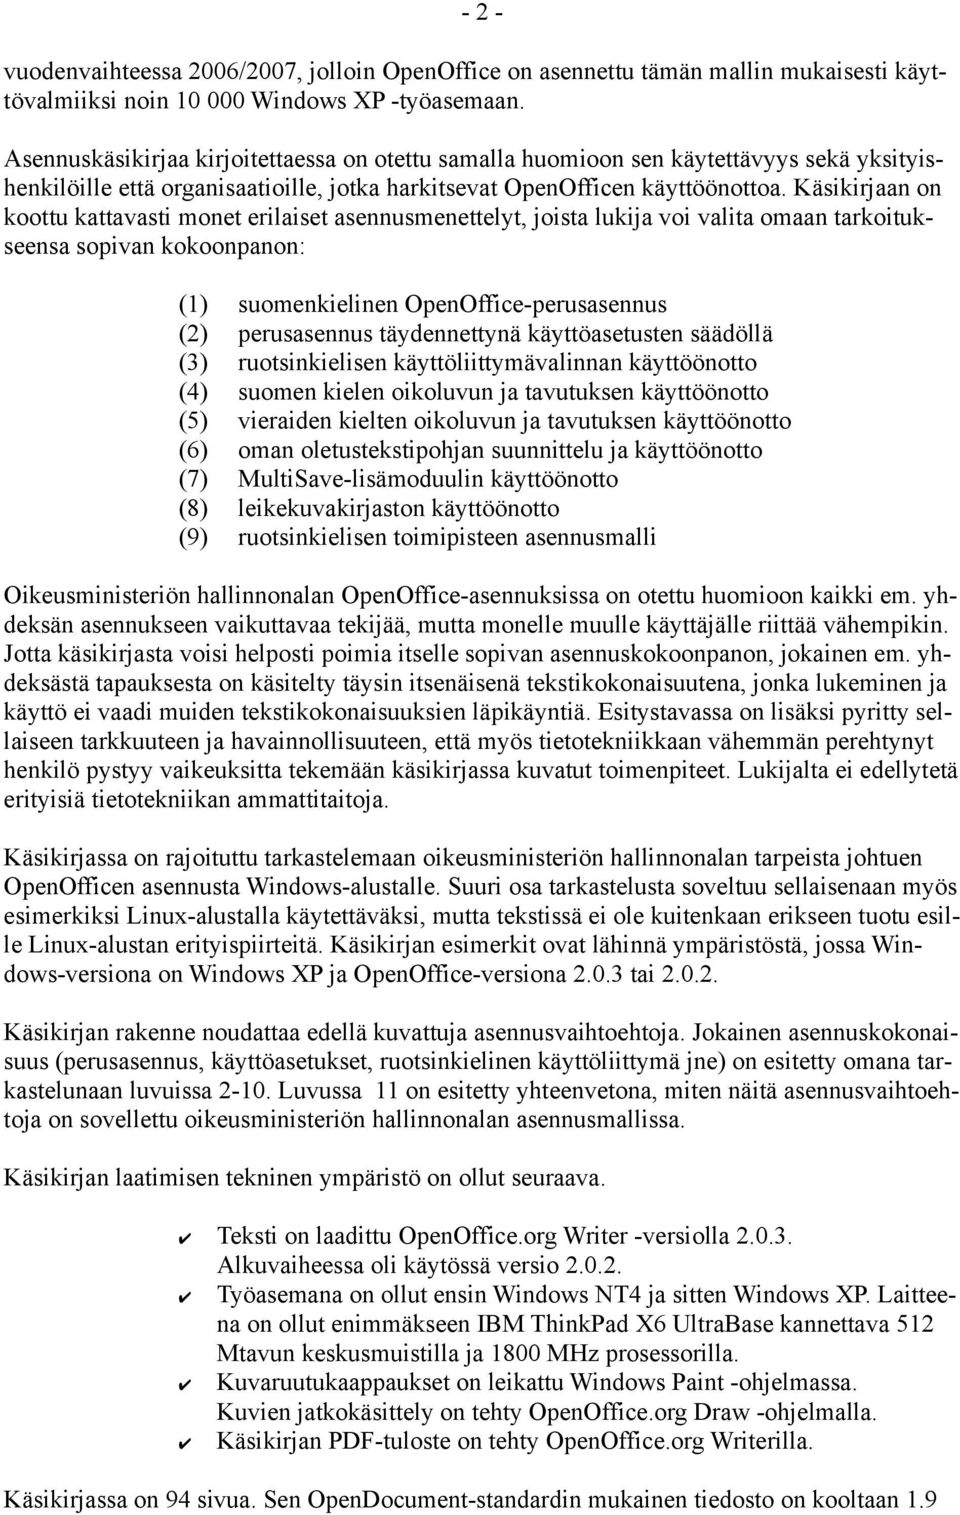 Käsikirjaan on koottu kattavasti monet erilaiset asennusmenettelyt, joista lukija voi valita omaan tarkoitukseensa sopivan kokoonpanon: (1) (2) (3) (4) (5) (6) (7) (8) (9) suomenkielinen